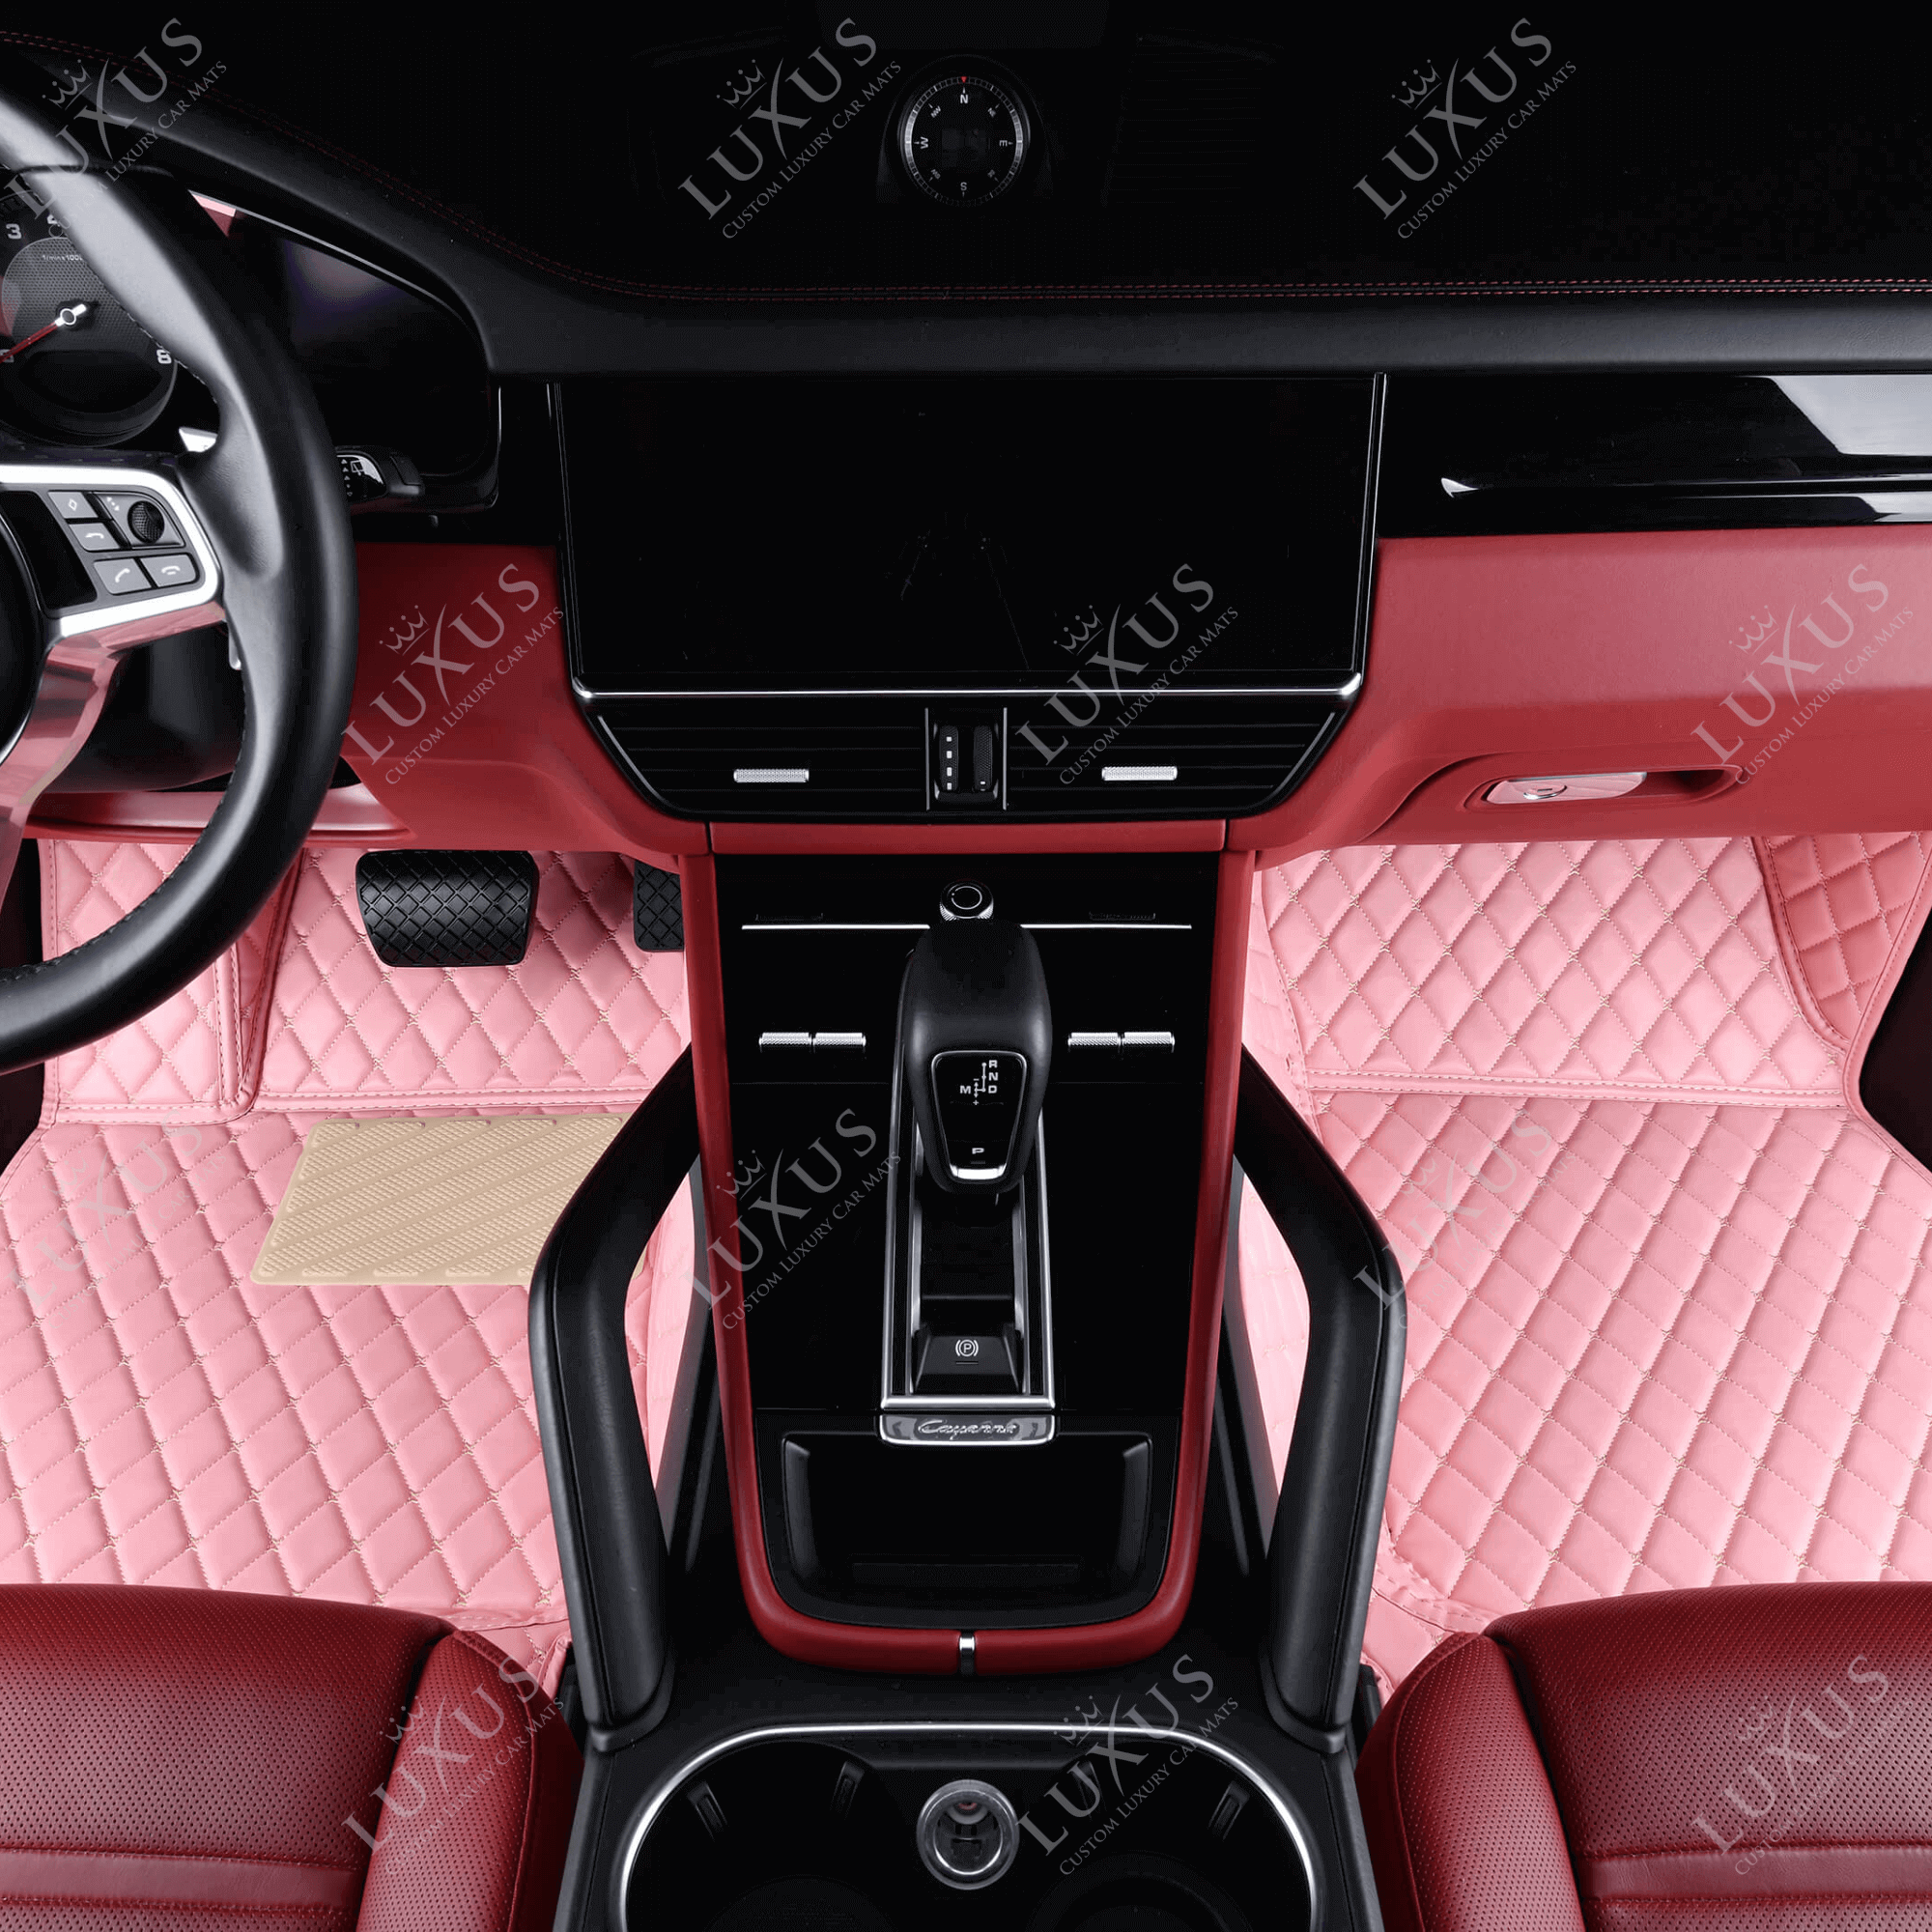 Luxus Car Mats™ – Kofferraum-/Kofferraummatte aus Leder in Ferrari-Rot